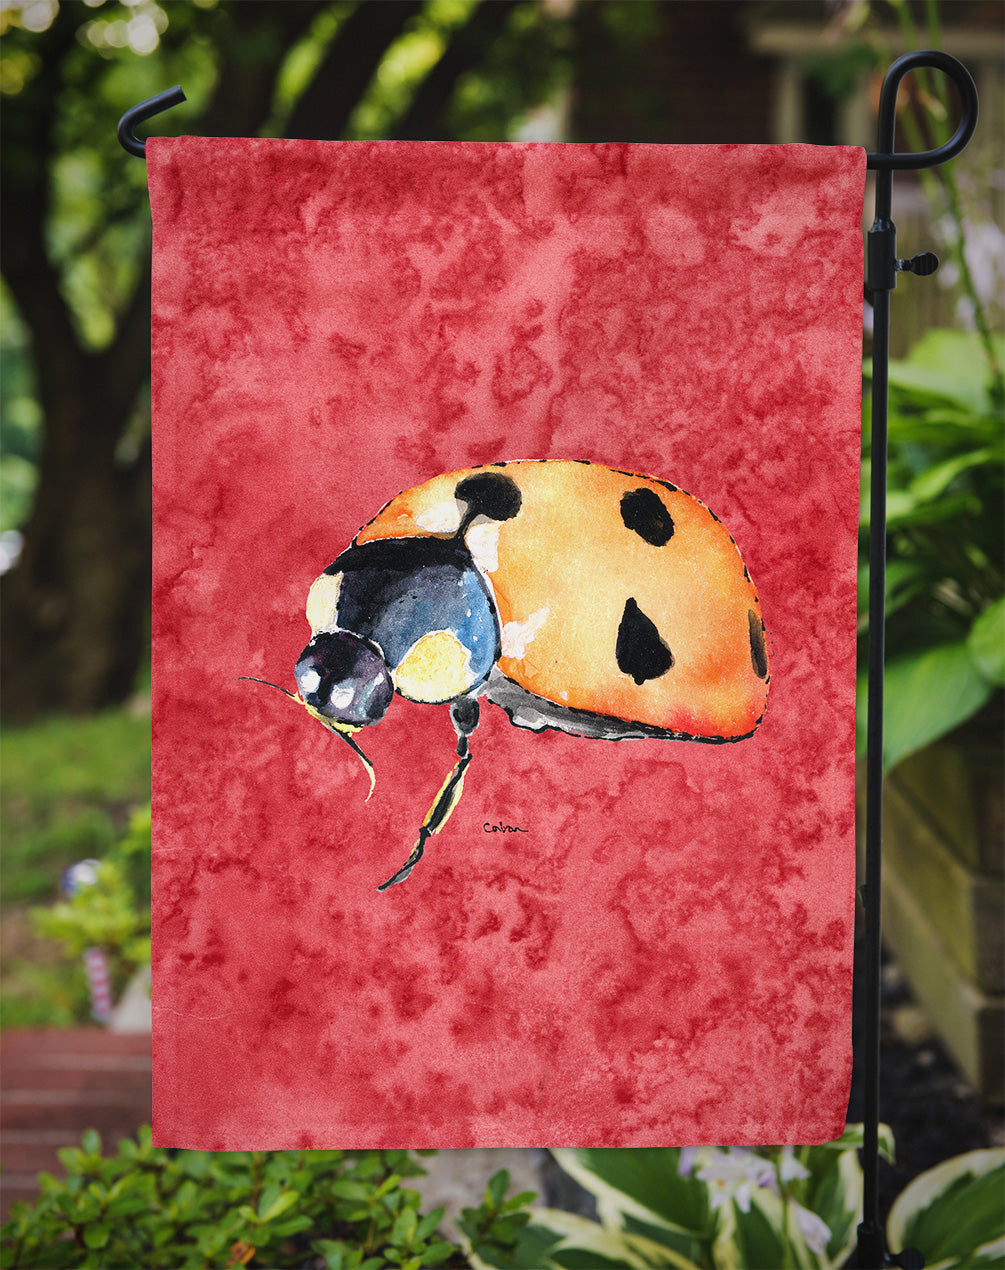 Lady Bug sur la taille du jardin du drapeau rouge